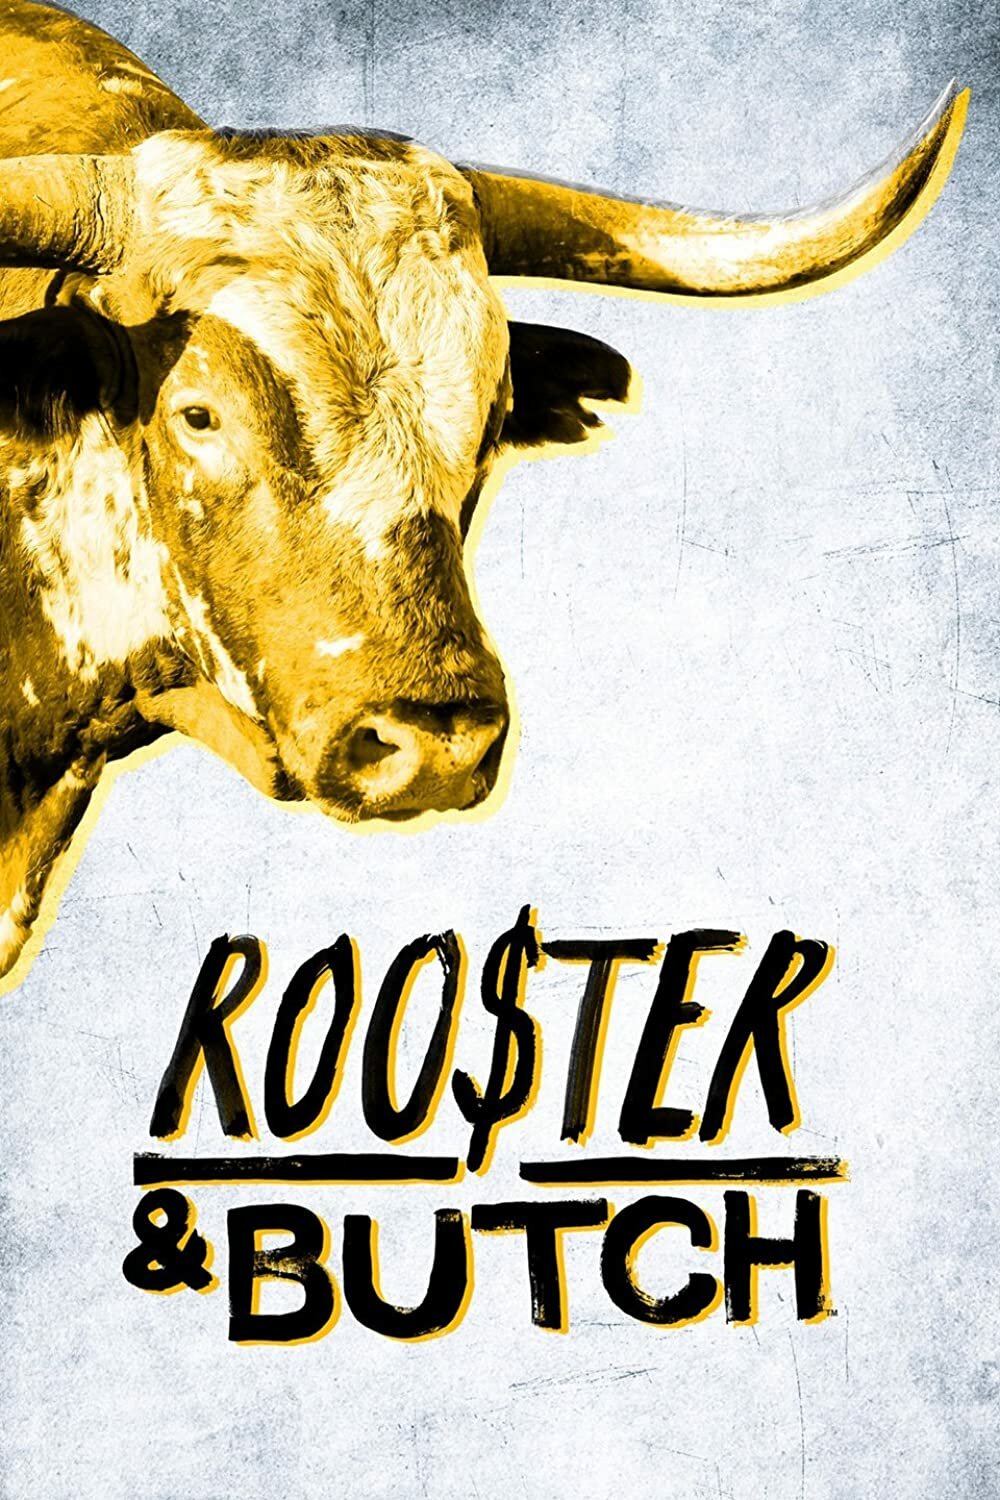 Rooster & Butch ne zaman